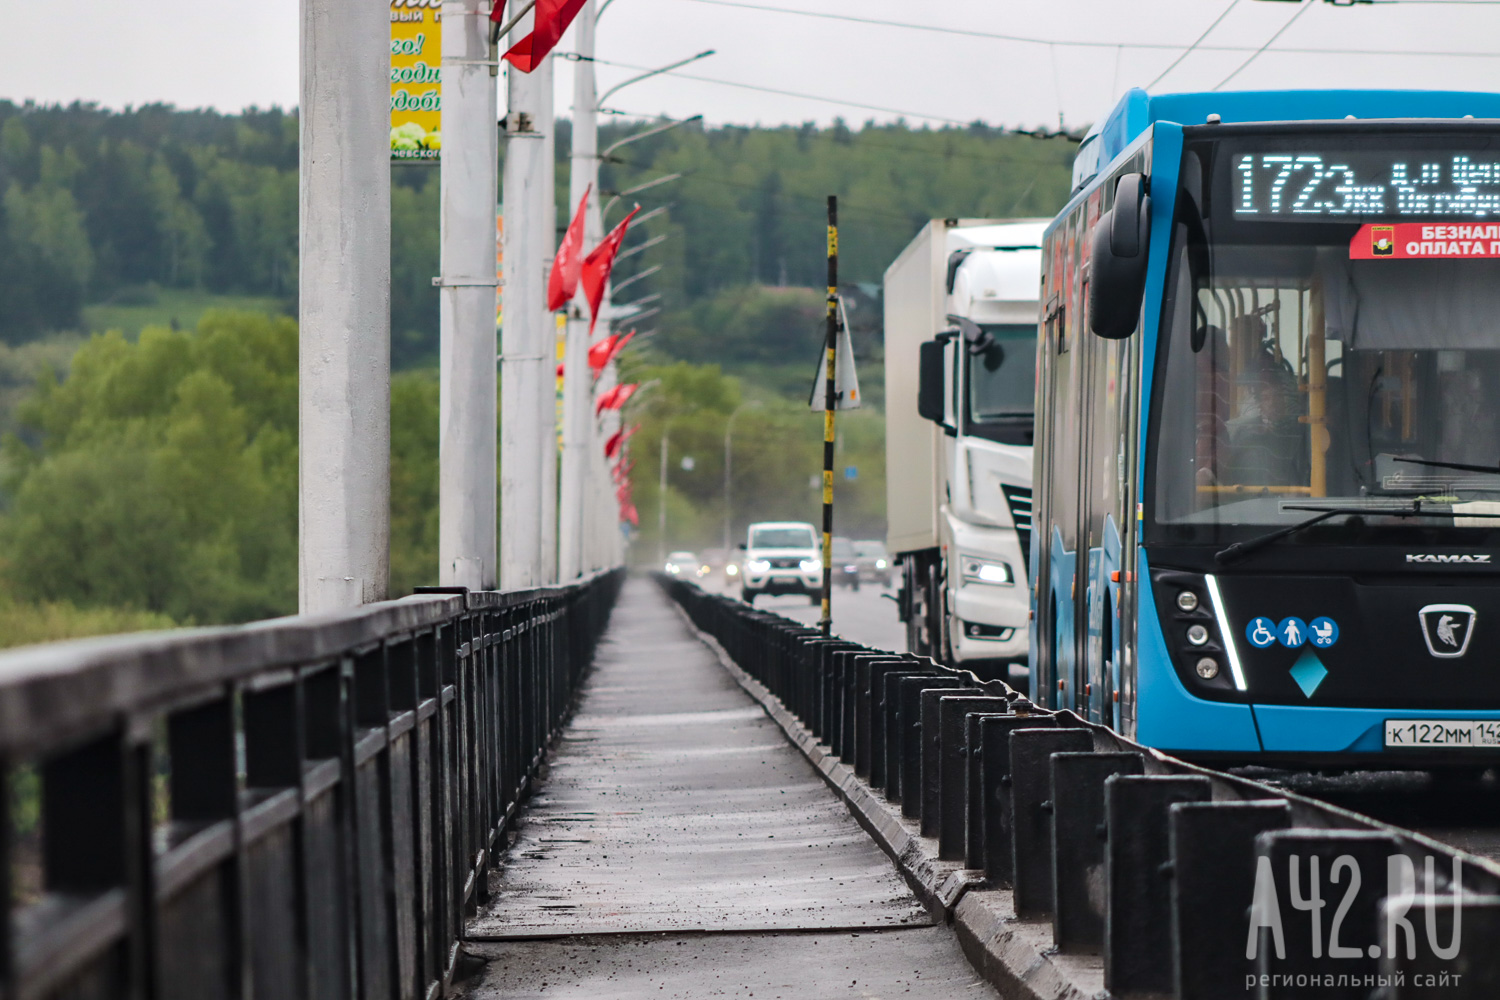 Маршруты нескольких автобусов изменятся из-за ремонта Кузбасского моста в Кемерове